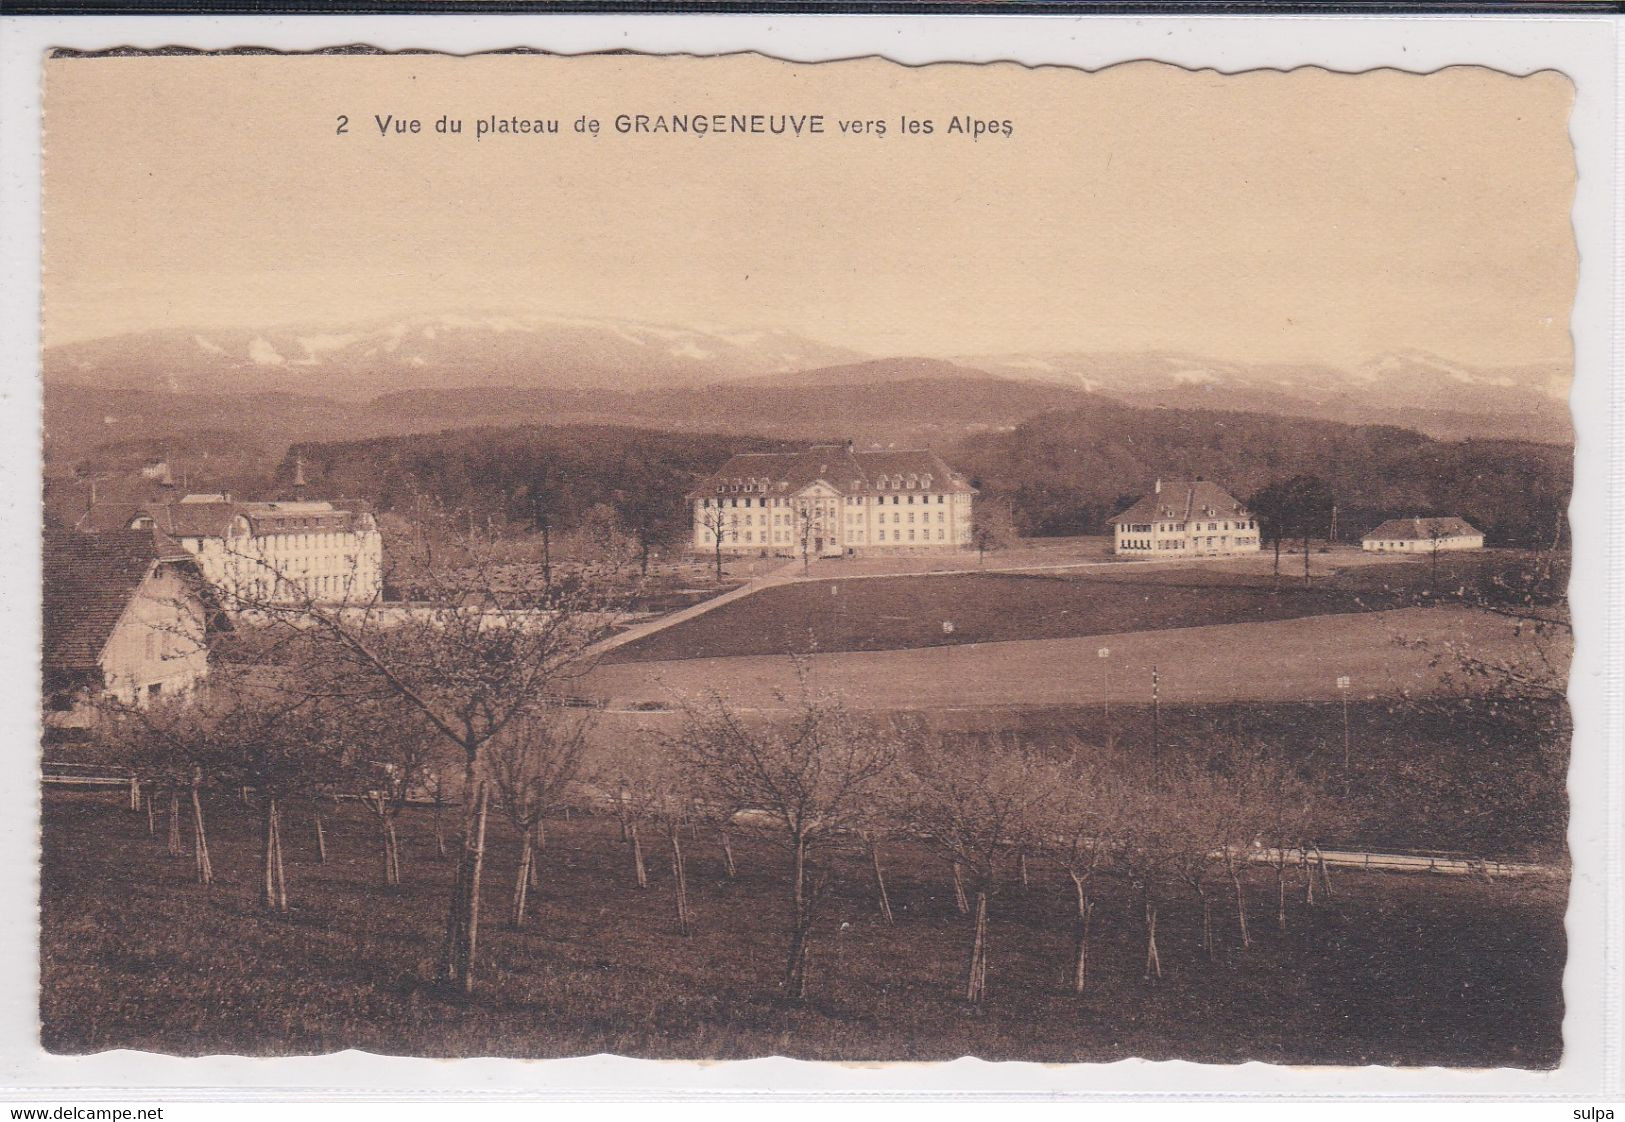 Posieux, Vue Du Plateau De Grangeneuve. Ecole D'agriculture, Vers Les Alpes - Posieux